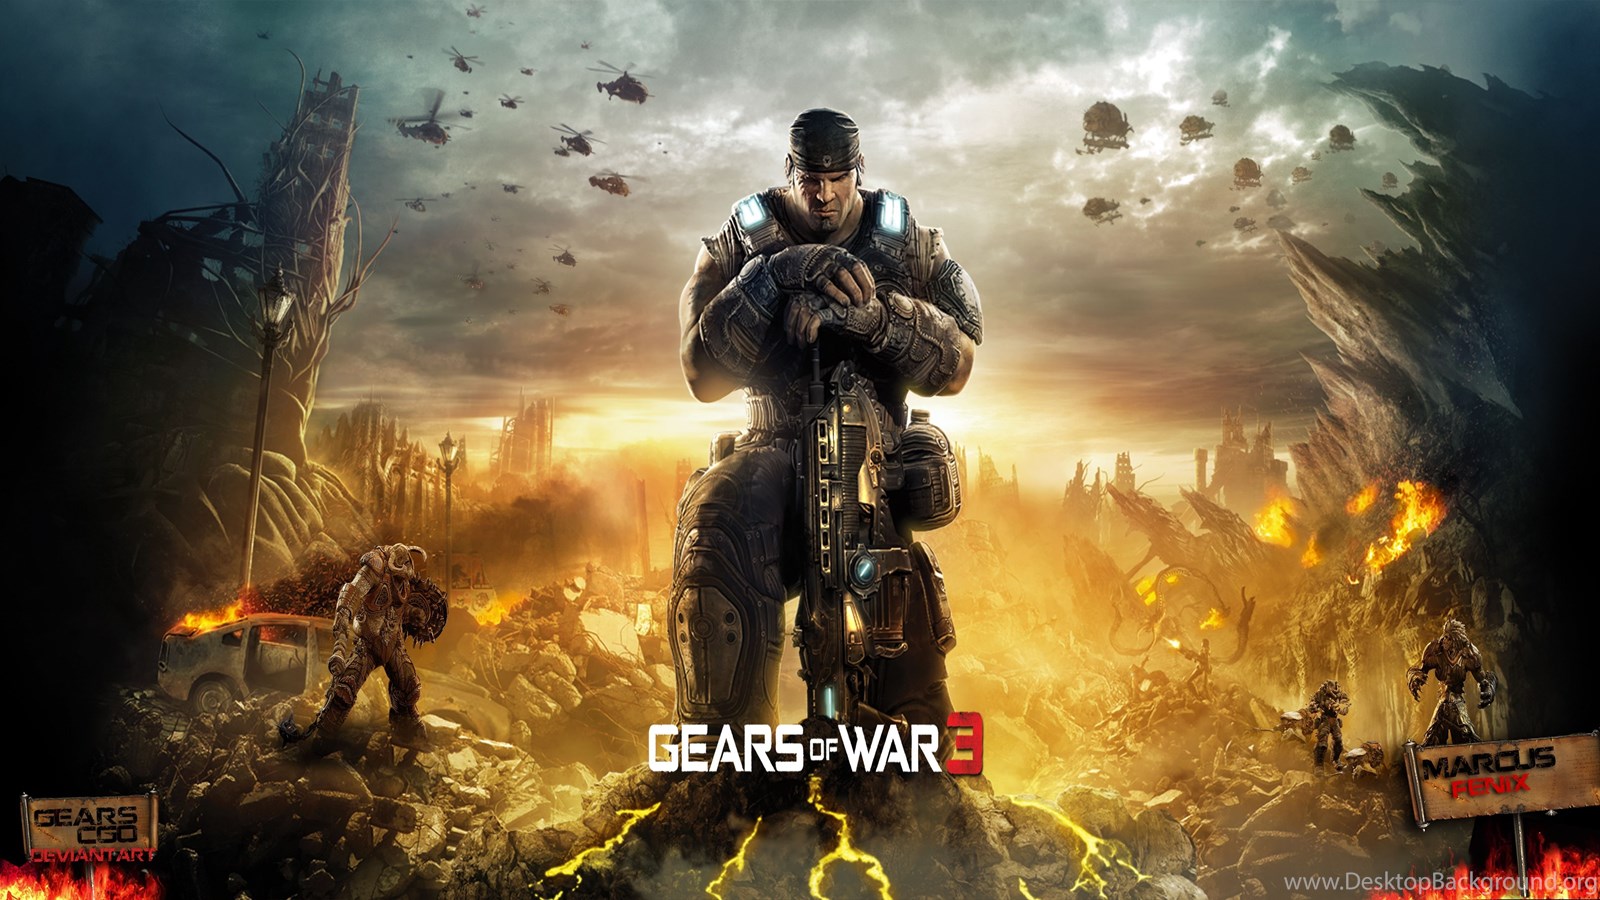 Gears Of War 3 Wallpapers By GearsCgo On DeviantArt Desktop Background